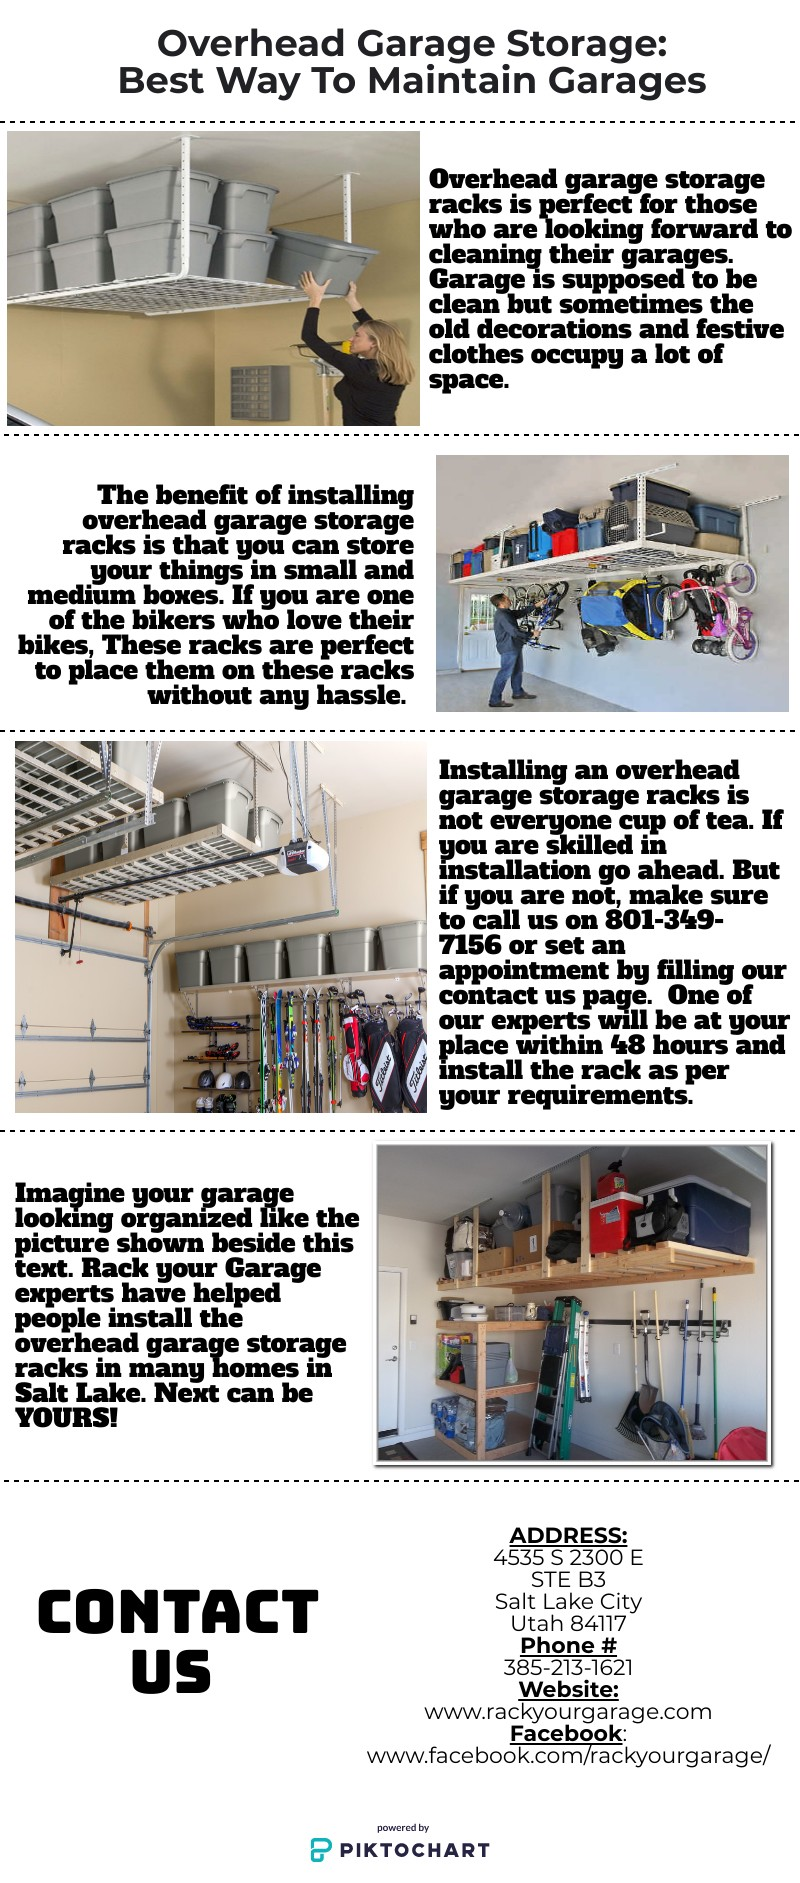 Overhead Garage Storage: Best Way To Maintain Garages